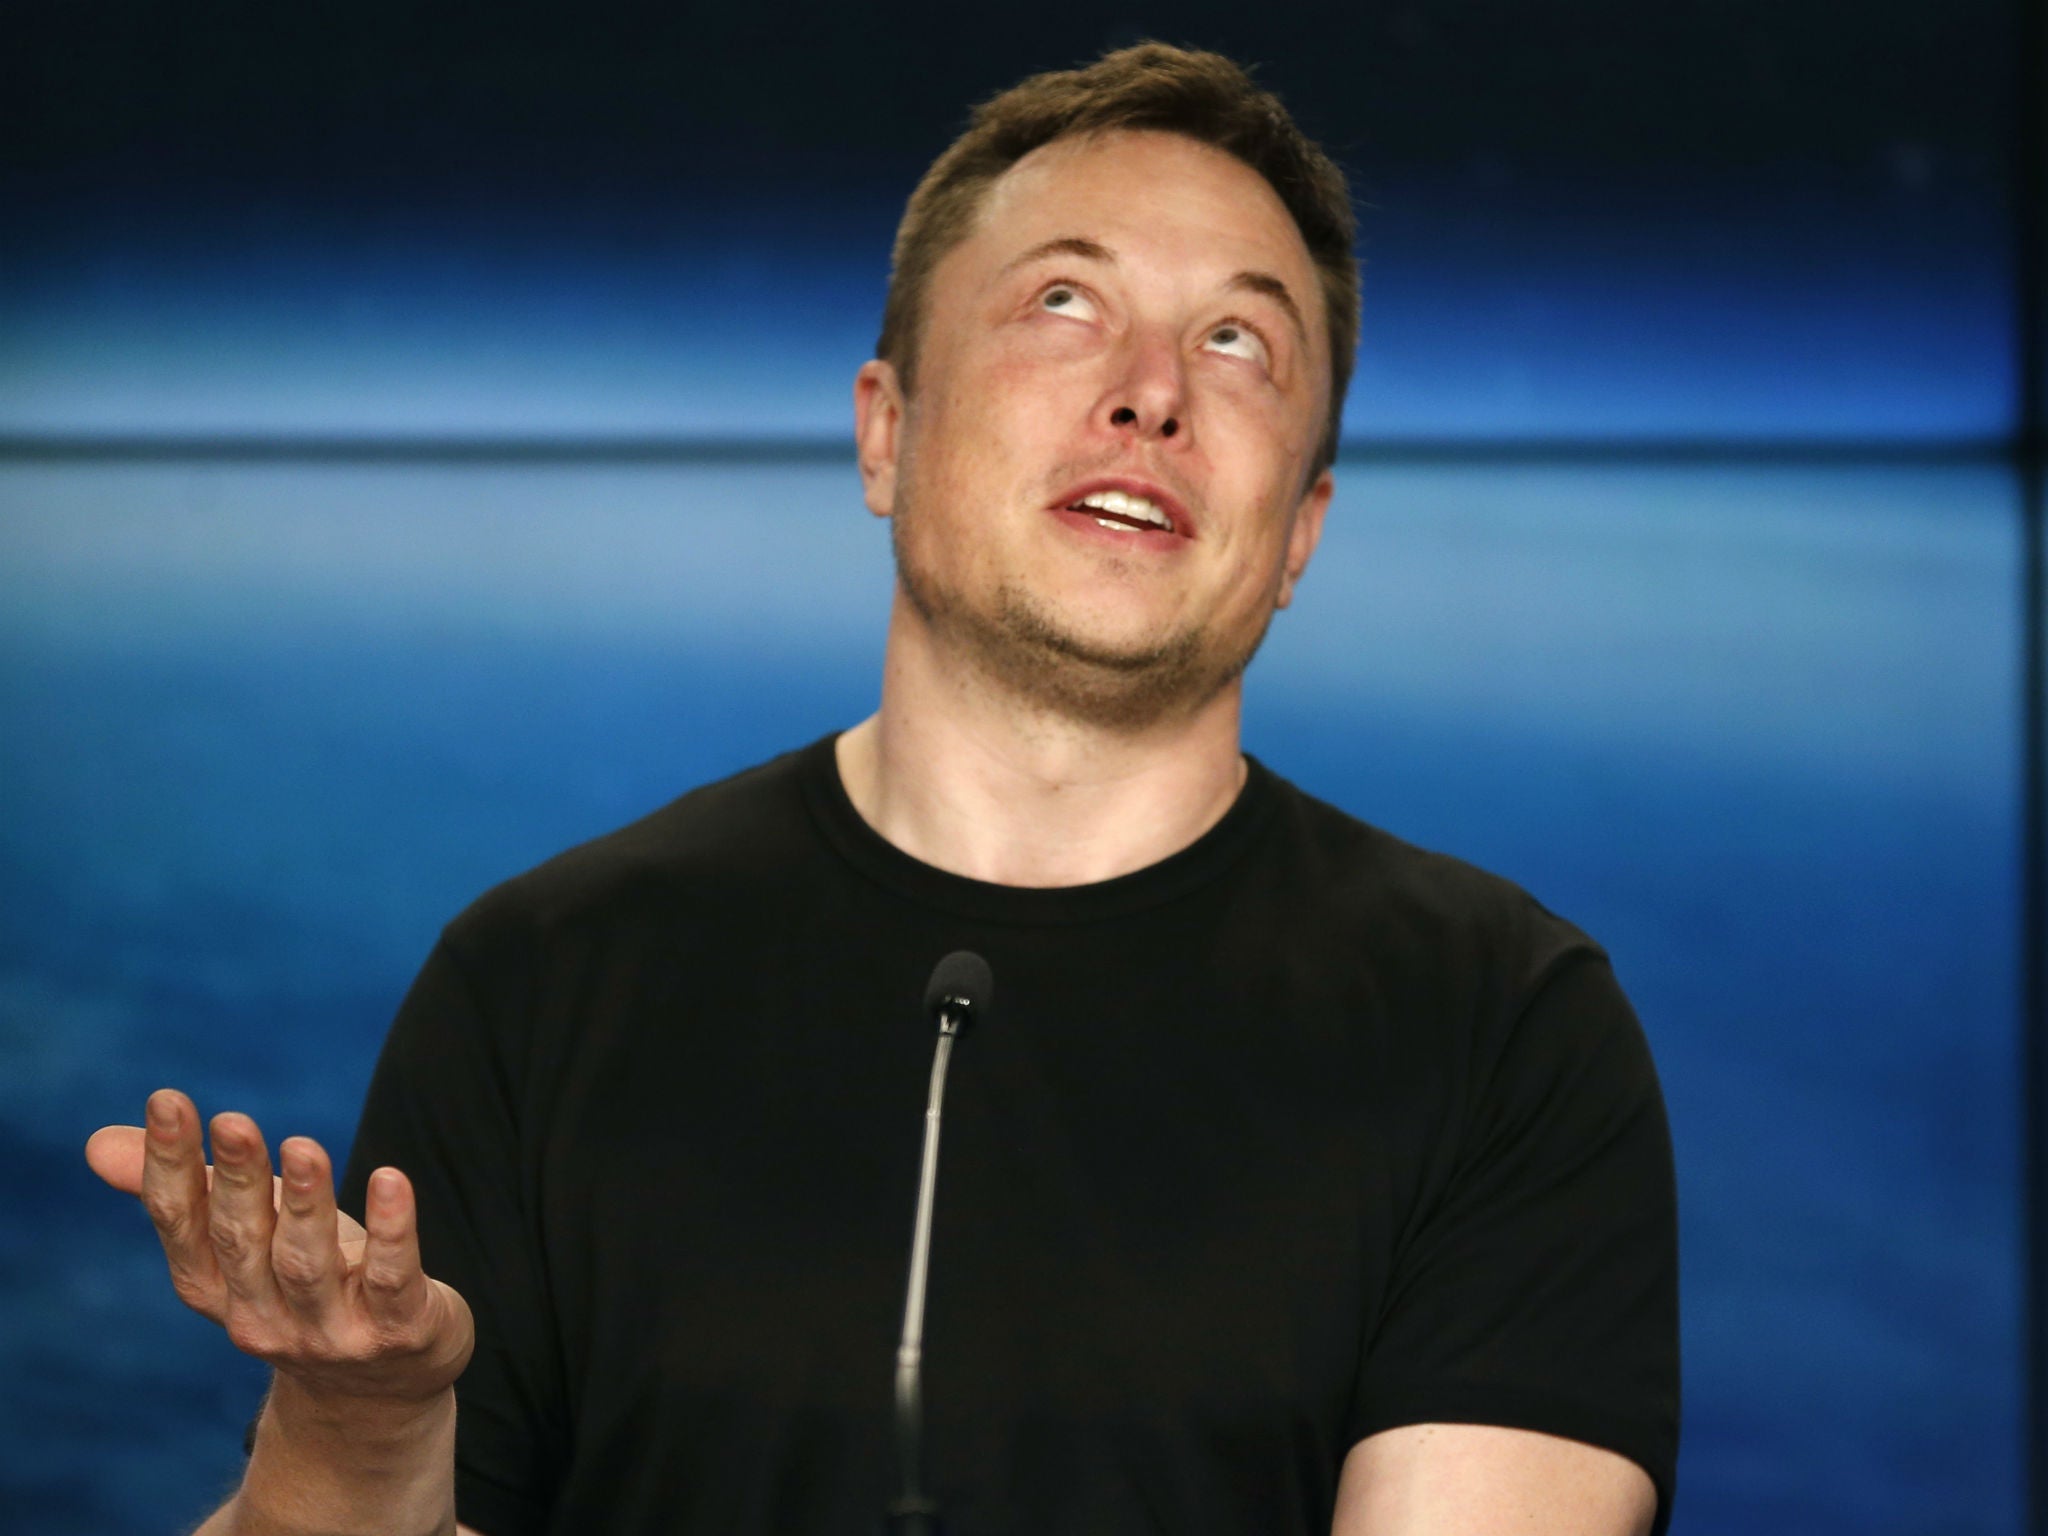 The ever newsworthy Tesla boss Elon Musk 